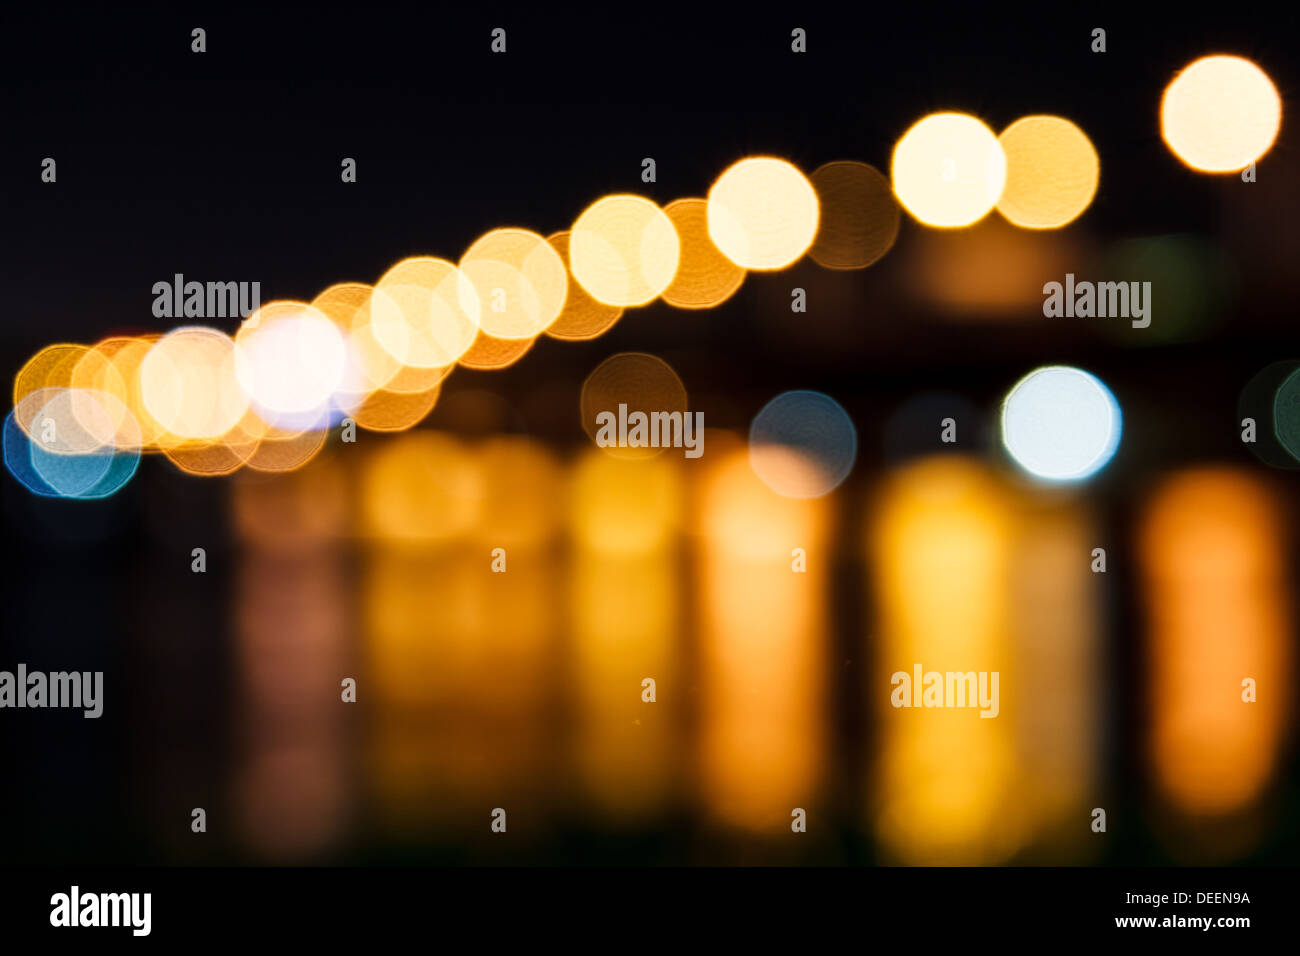 light blur photos at night Stock Photo